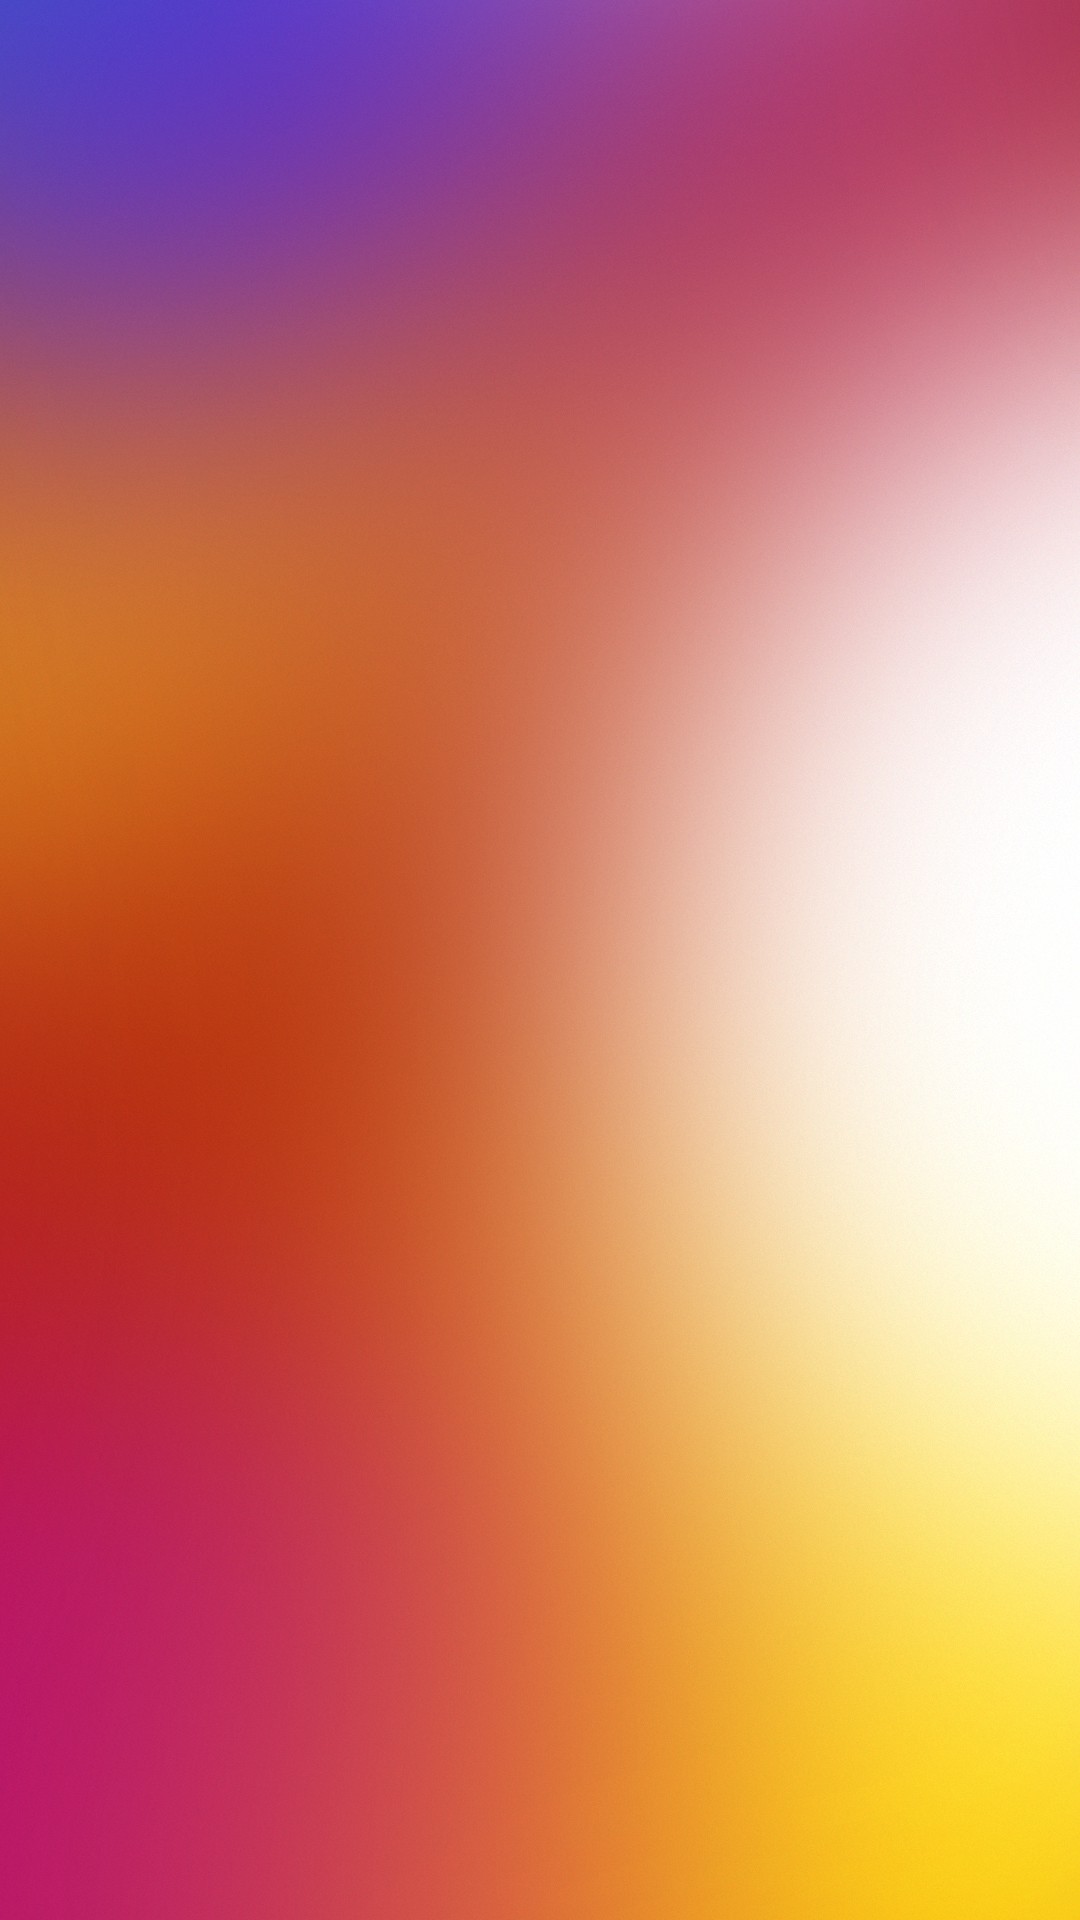 lenovo k5 note fond d'écran hd,ciel,orange,rose,rouge,jaune